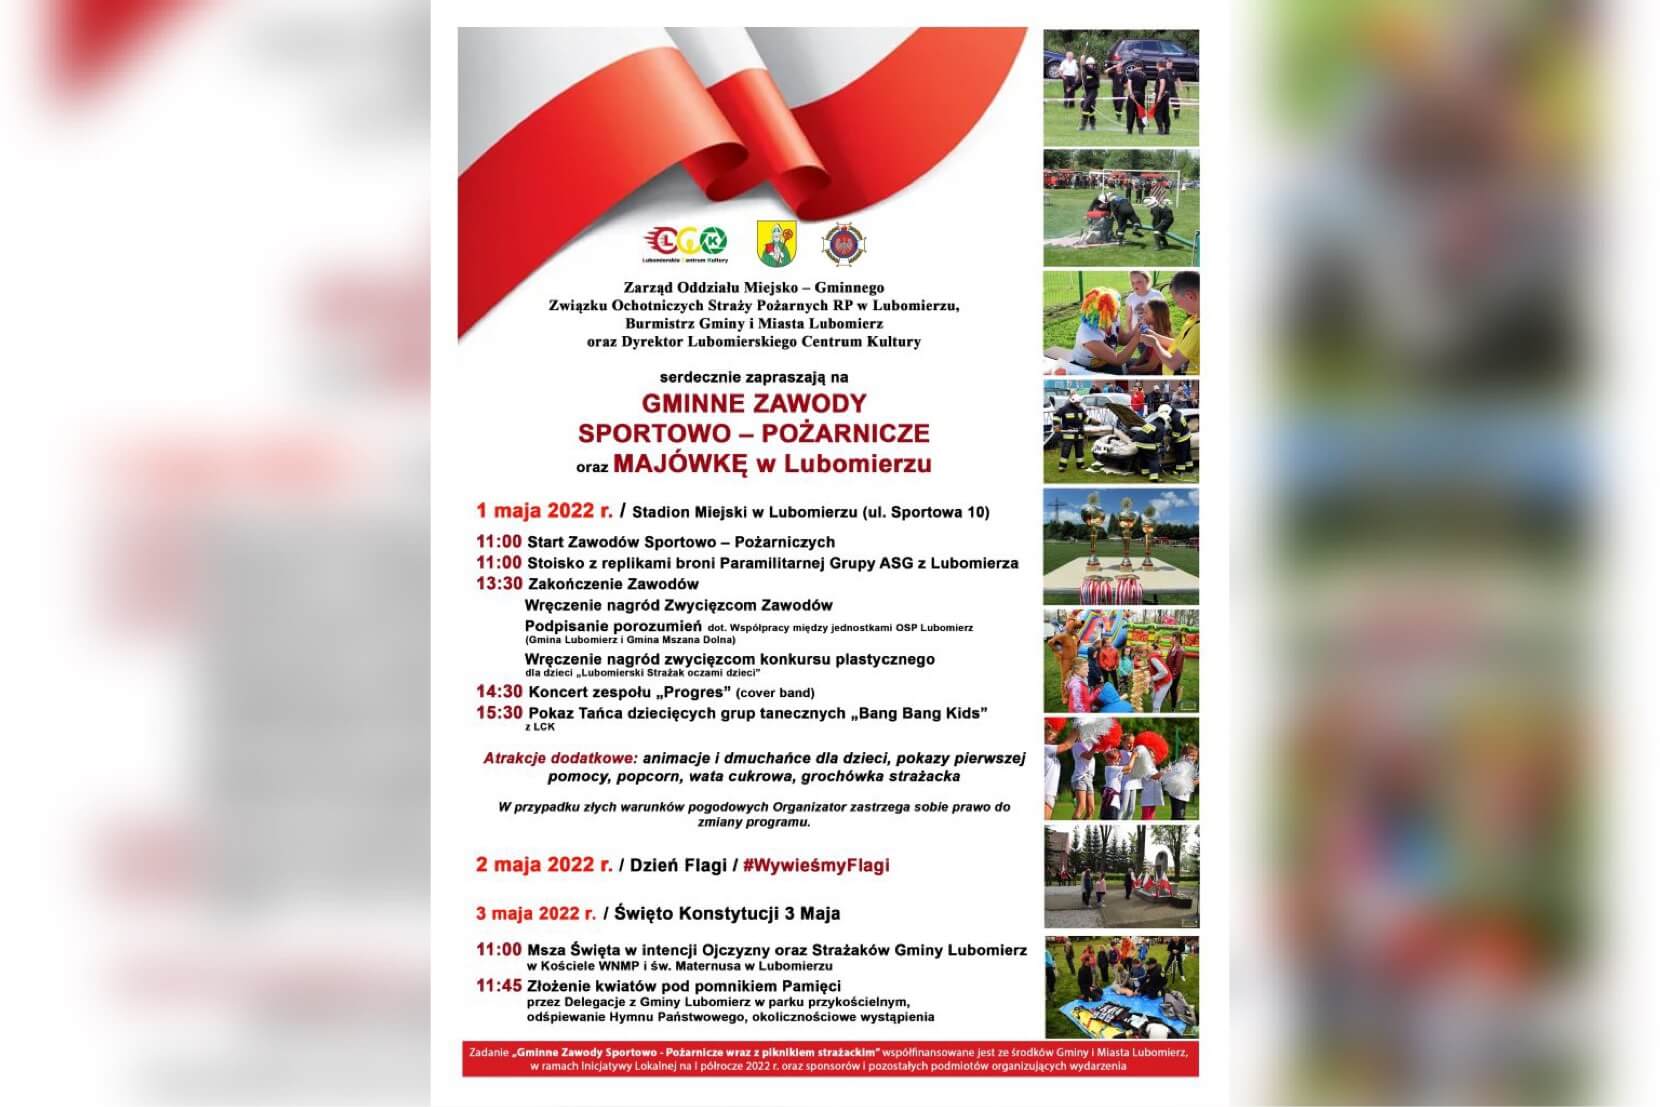  Majówka: Zawody Sportowo-Pożarnicze w Lubomierzu – Program